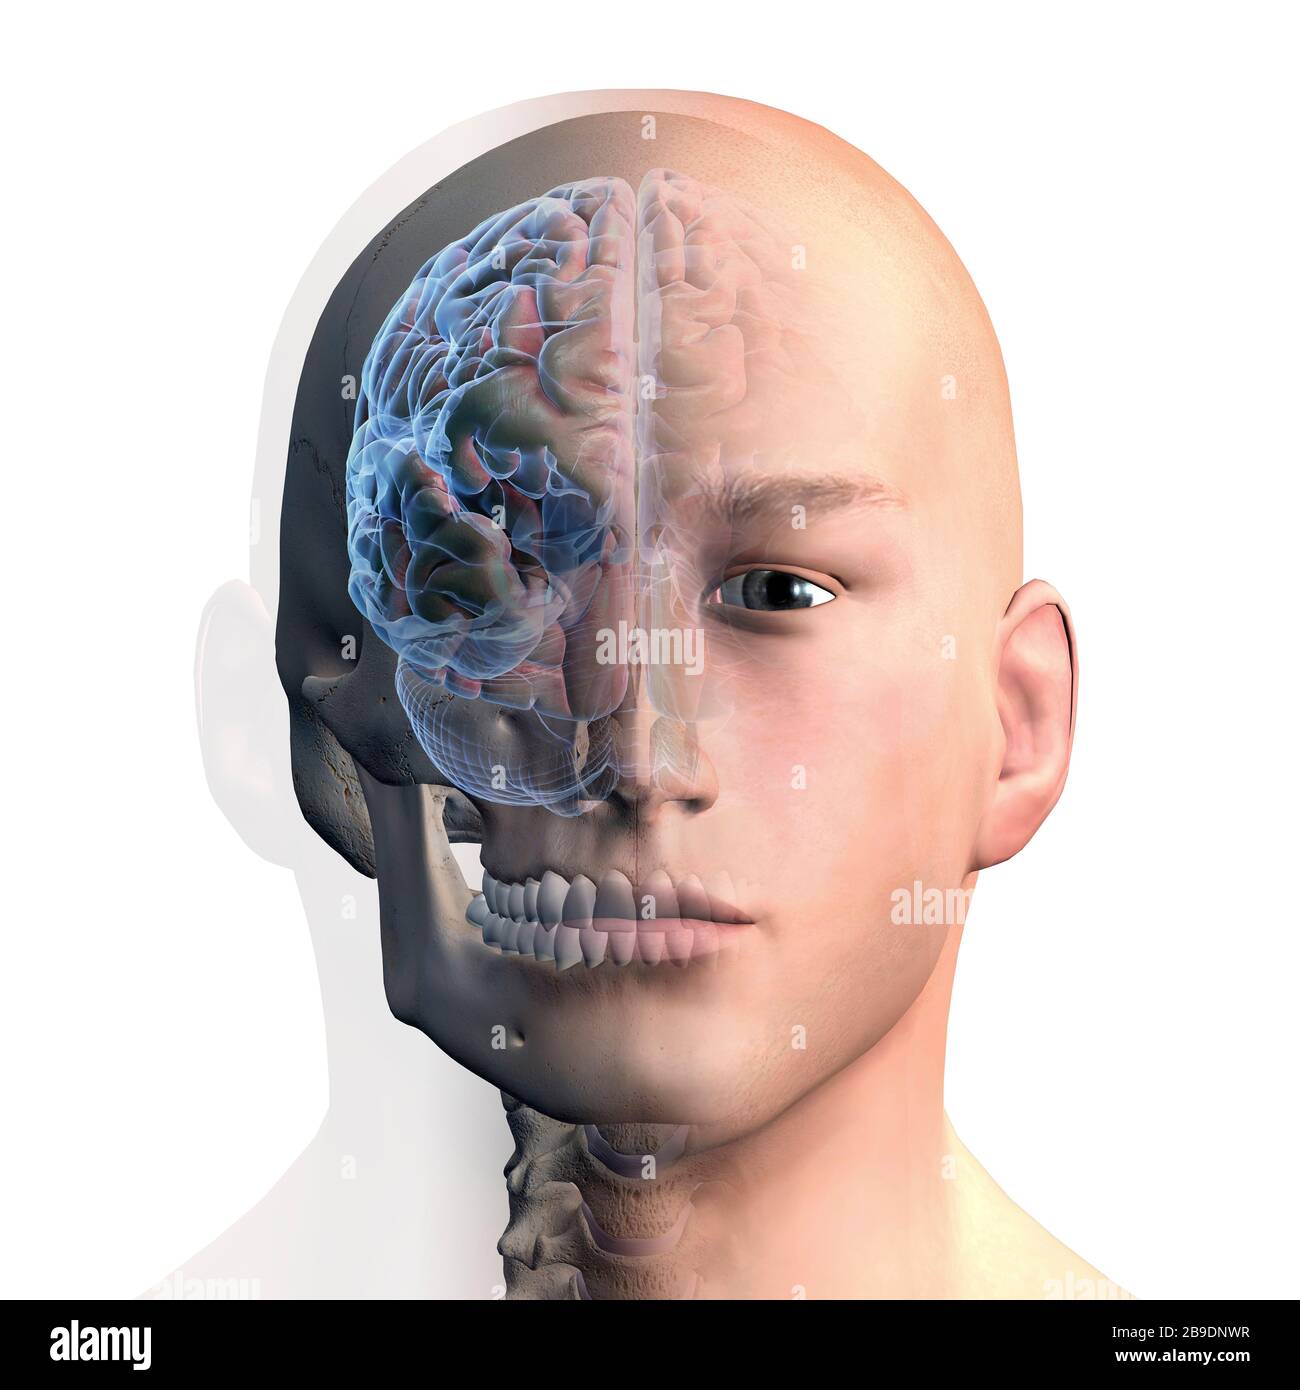 Representación 3D de la cabeza y el cerebro humanos sobre fondo blanco. Foto de stock